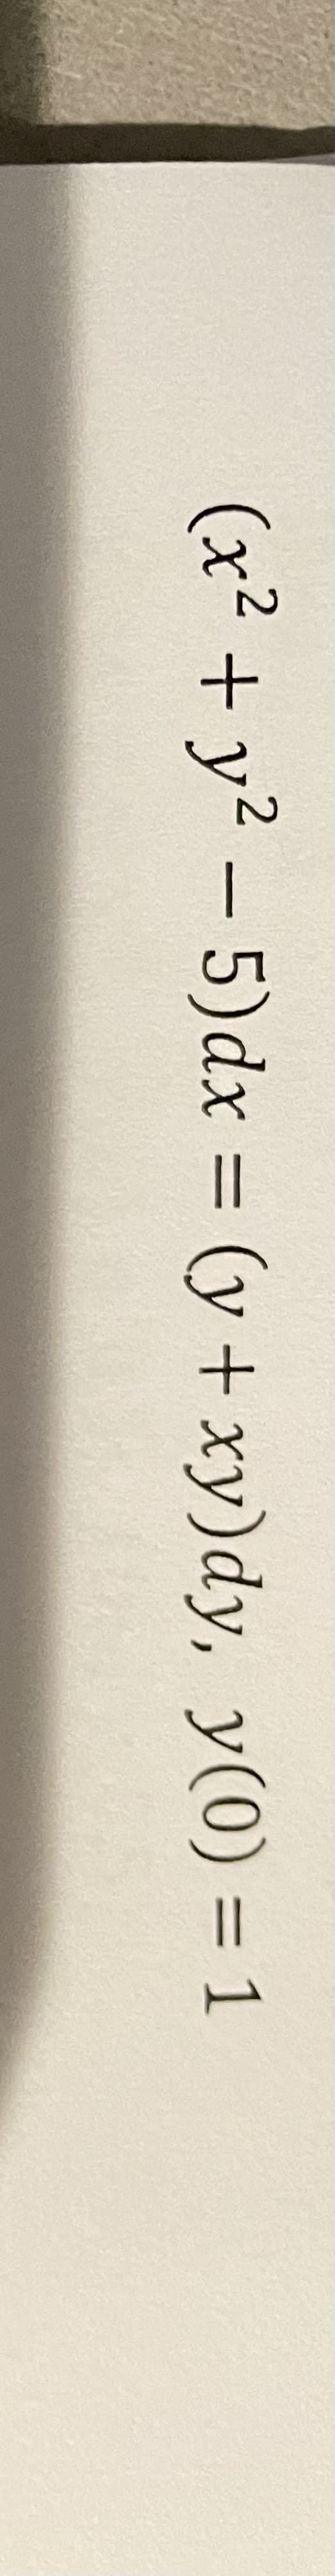 (x² + y2 -5)dx (y + xy)dy, y(0) = 1
